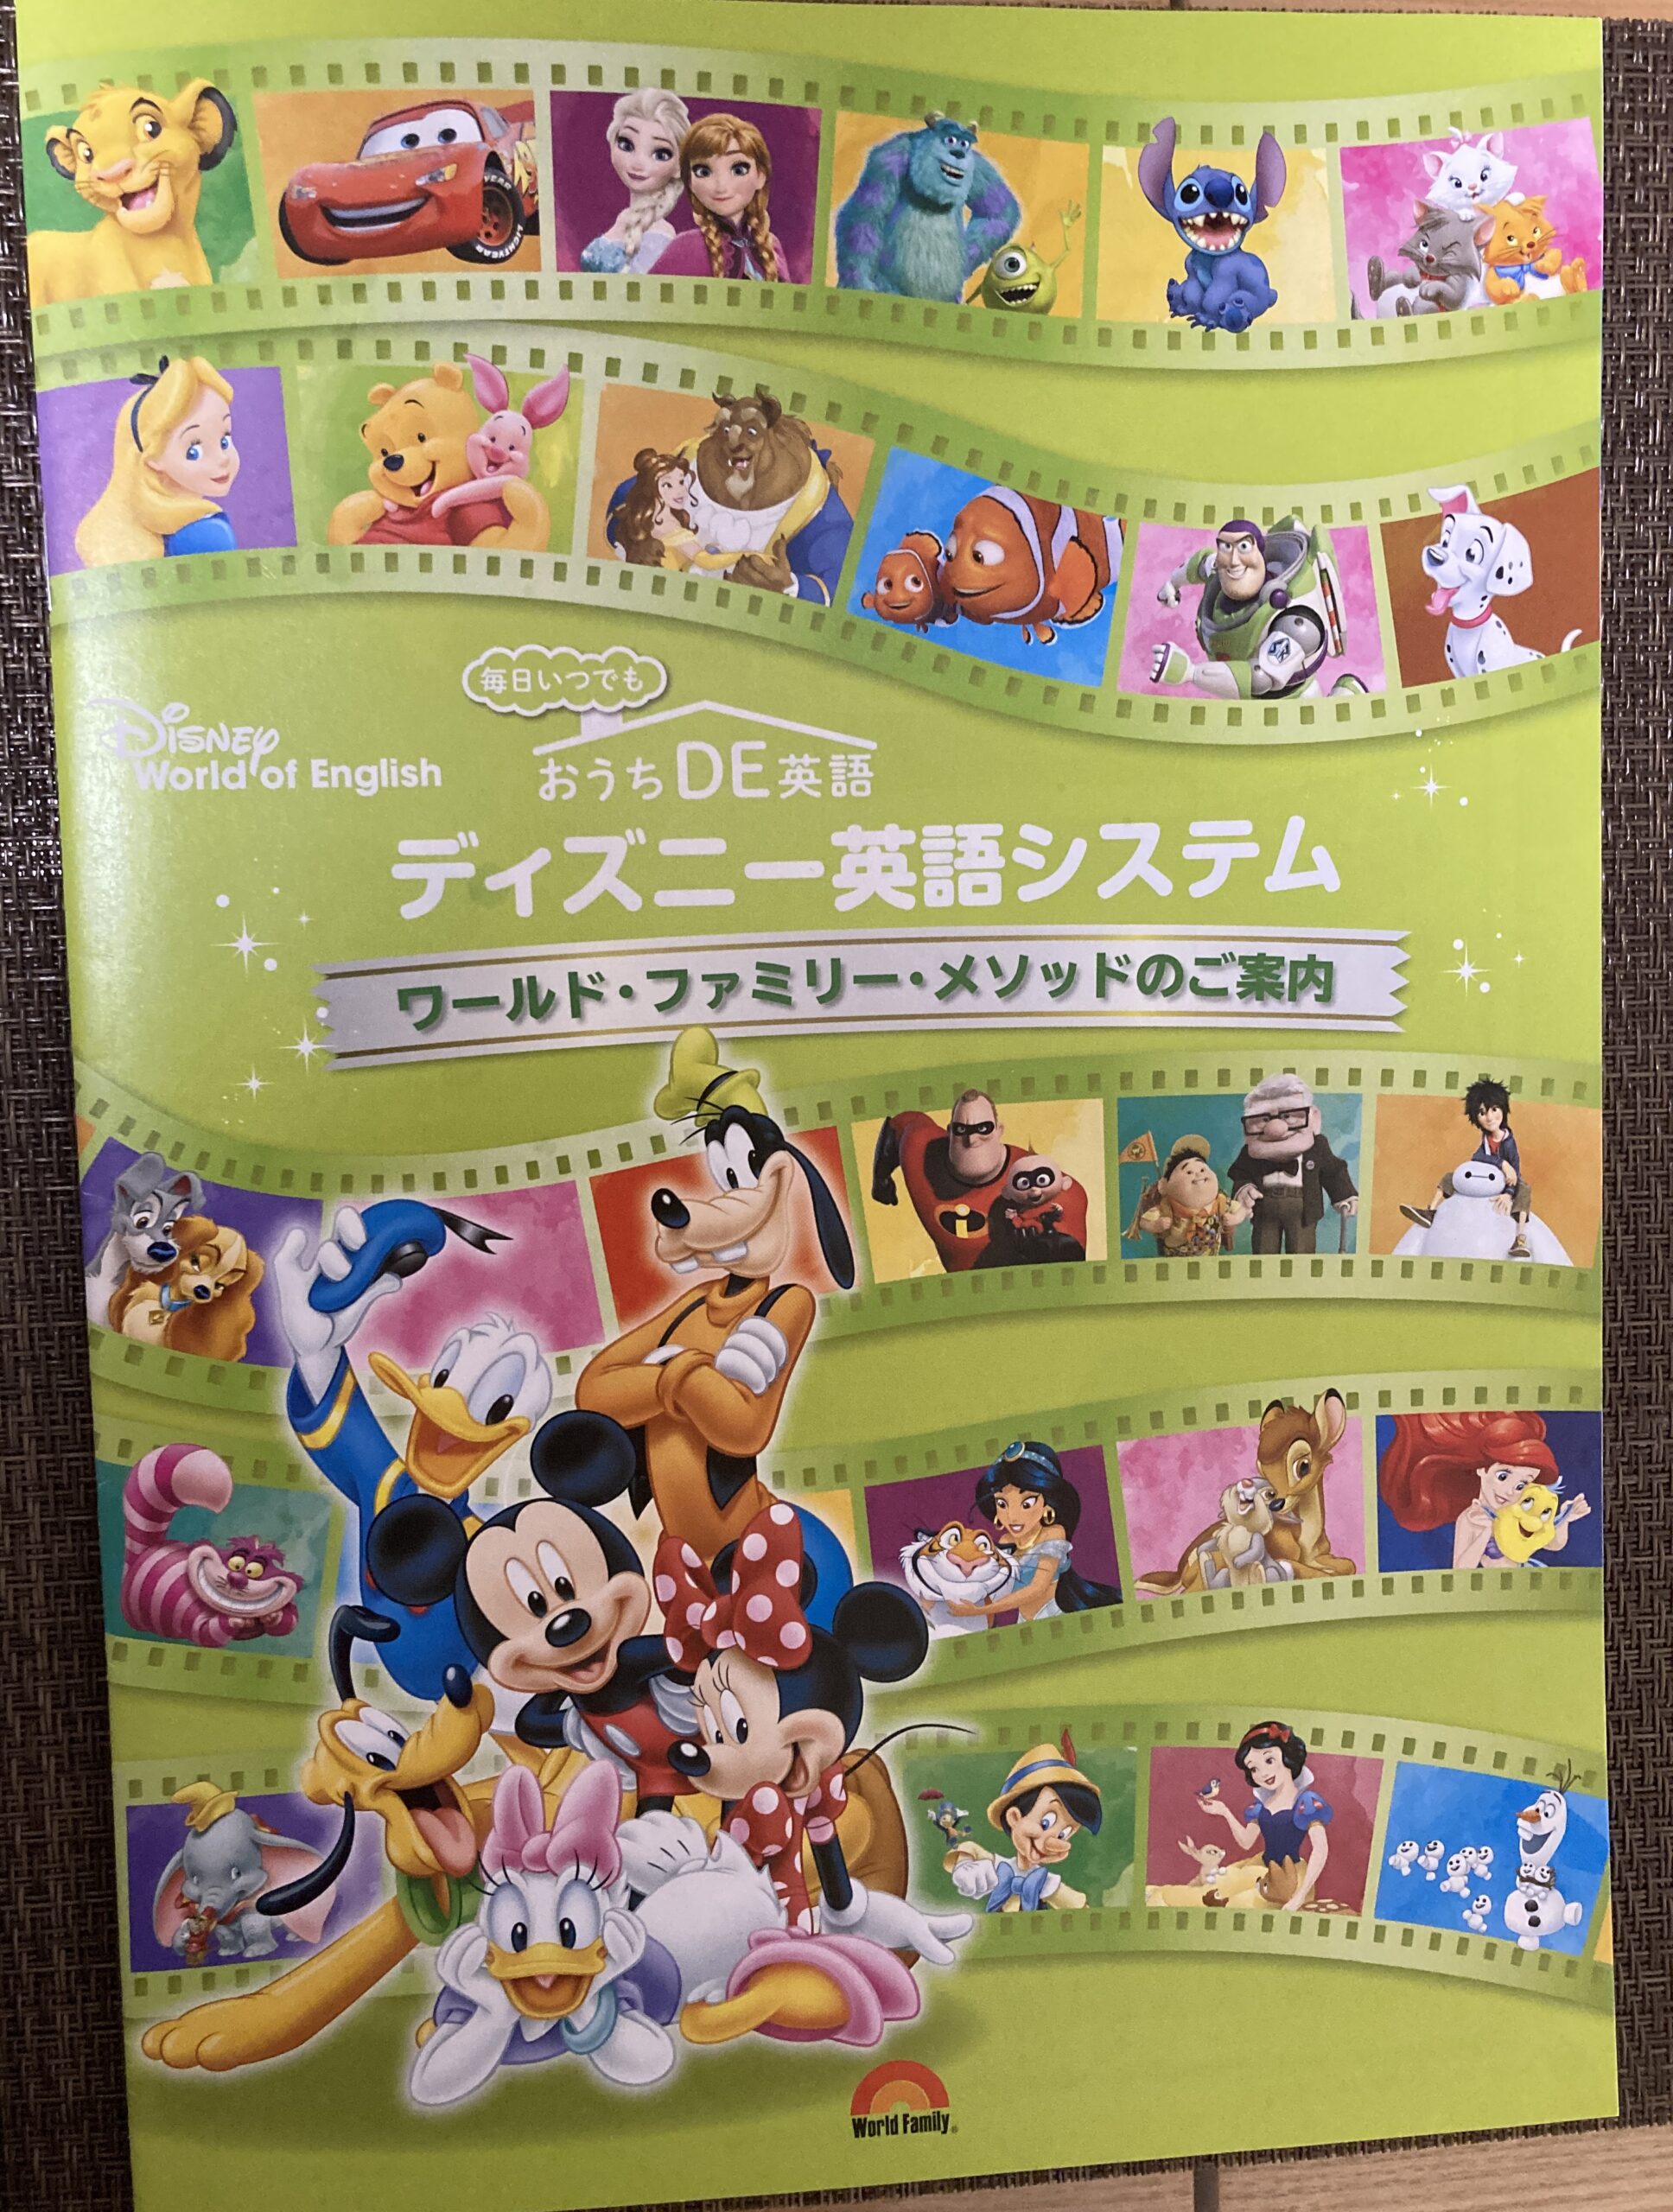 再生未確認Disney's WORLD OF ENGLISH DVD46CD19 - キッズ・ファミリー